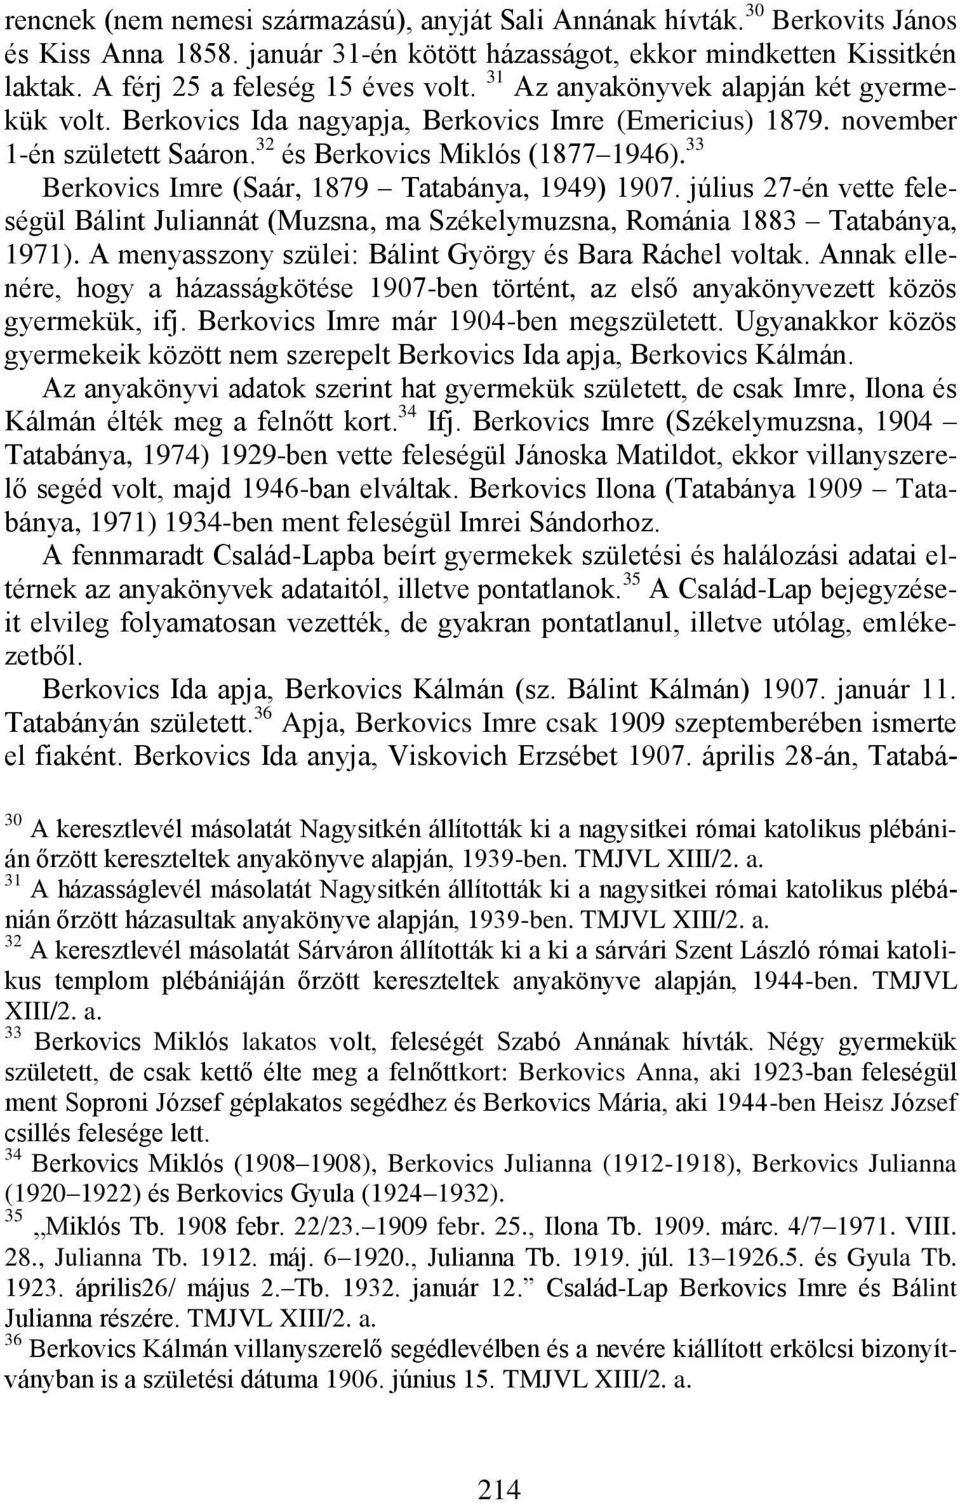 33 Berkovics Imre (Saár, 1879 Tatabánya, 1949) 1907. július 27-én vette feleségül Bálint Juliannát (Muzsna, ma Székelymuzsna, Románia 1883 Tatabánya, 1971).